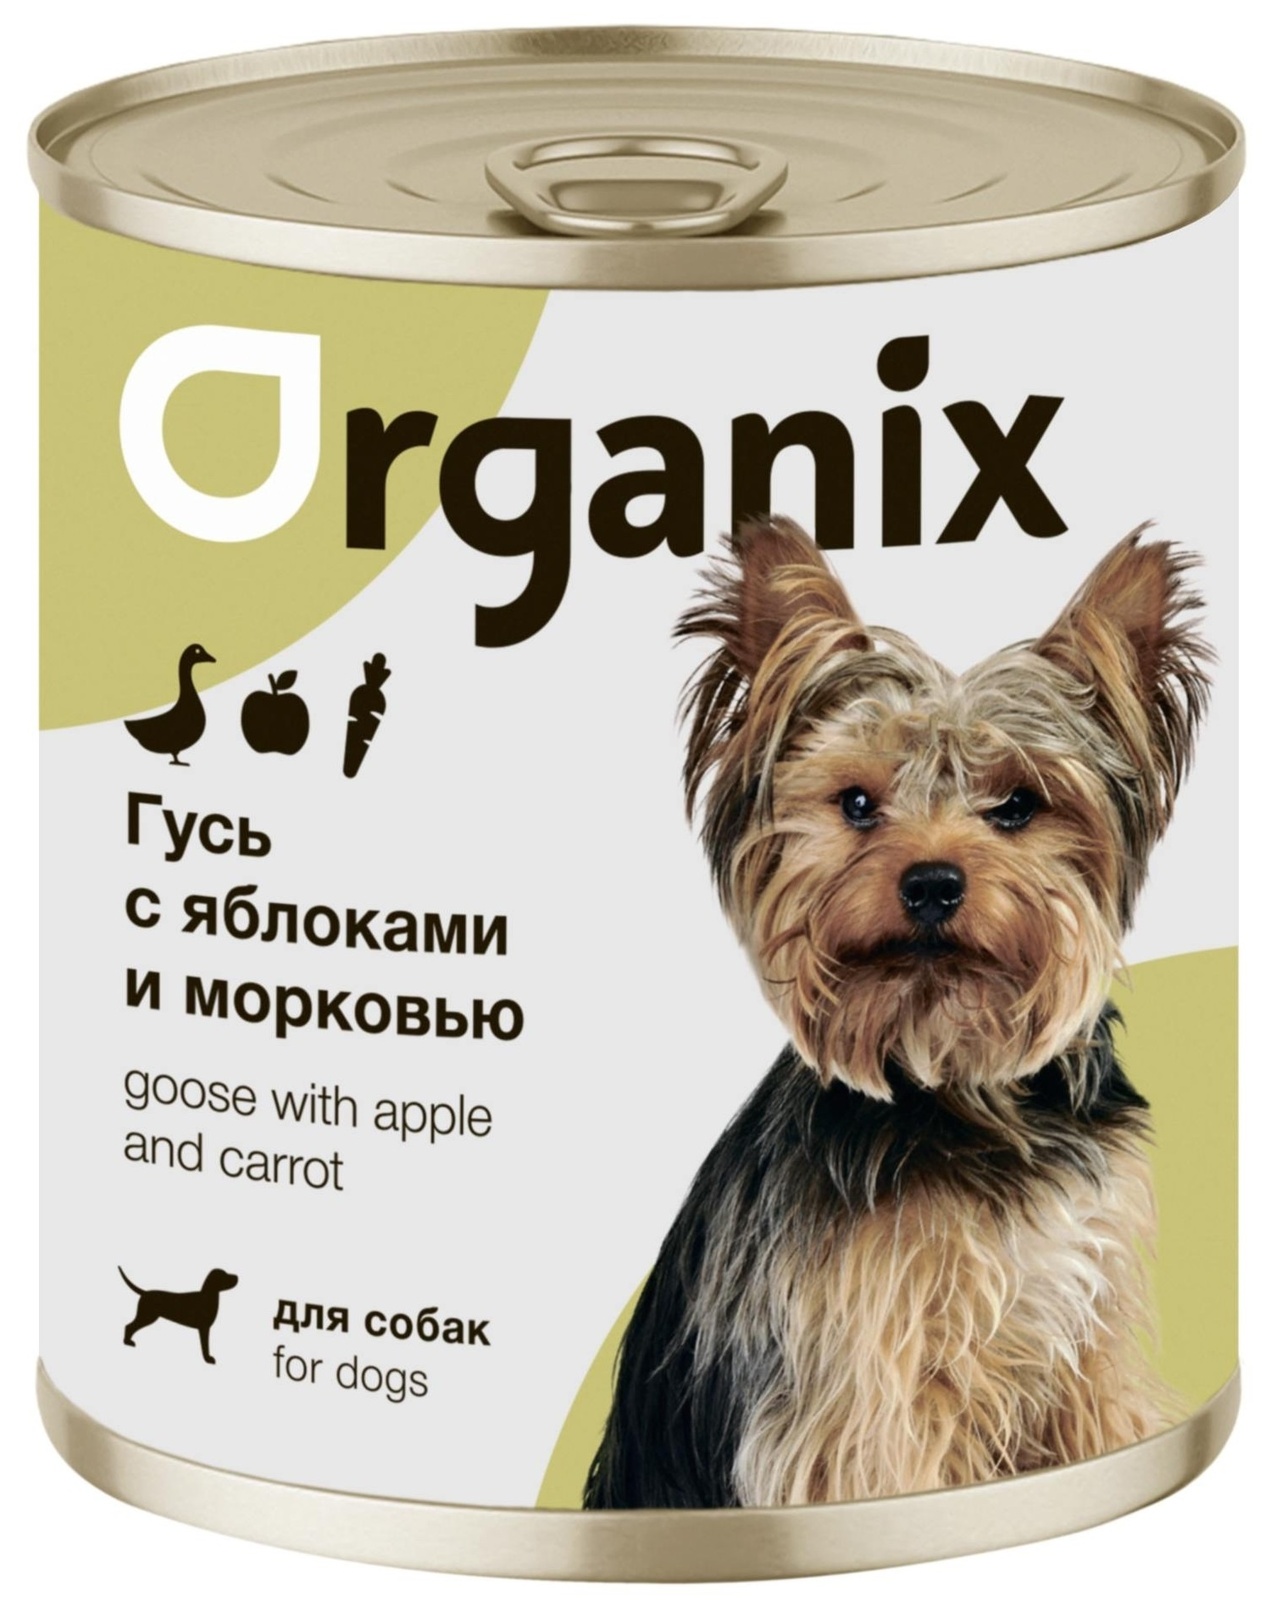 Organix консервы Organix консервы для собак Фрикасе из гуся с яблоками и морковкой (400 г) organix консервы консервы для собак рагу из гуся с языком и цуккини 22ел16 0 4 кг